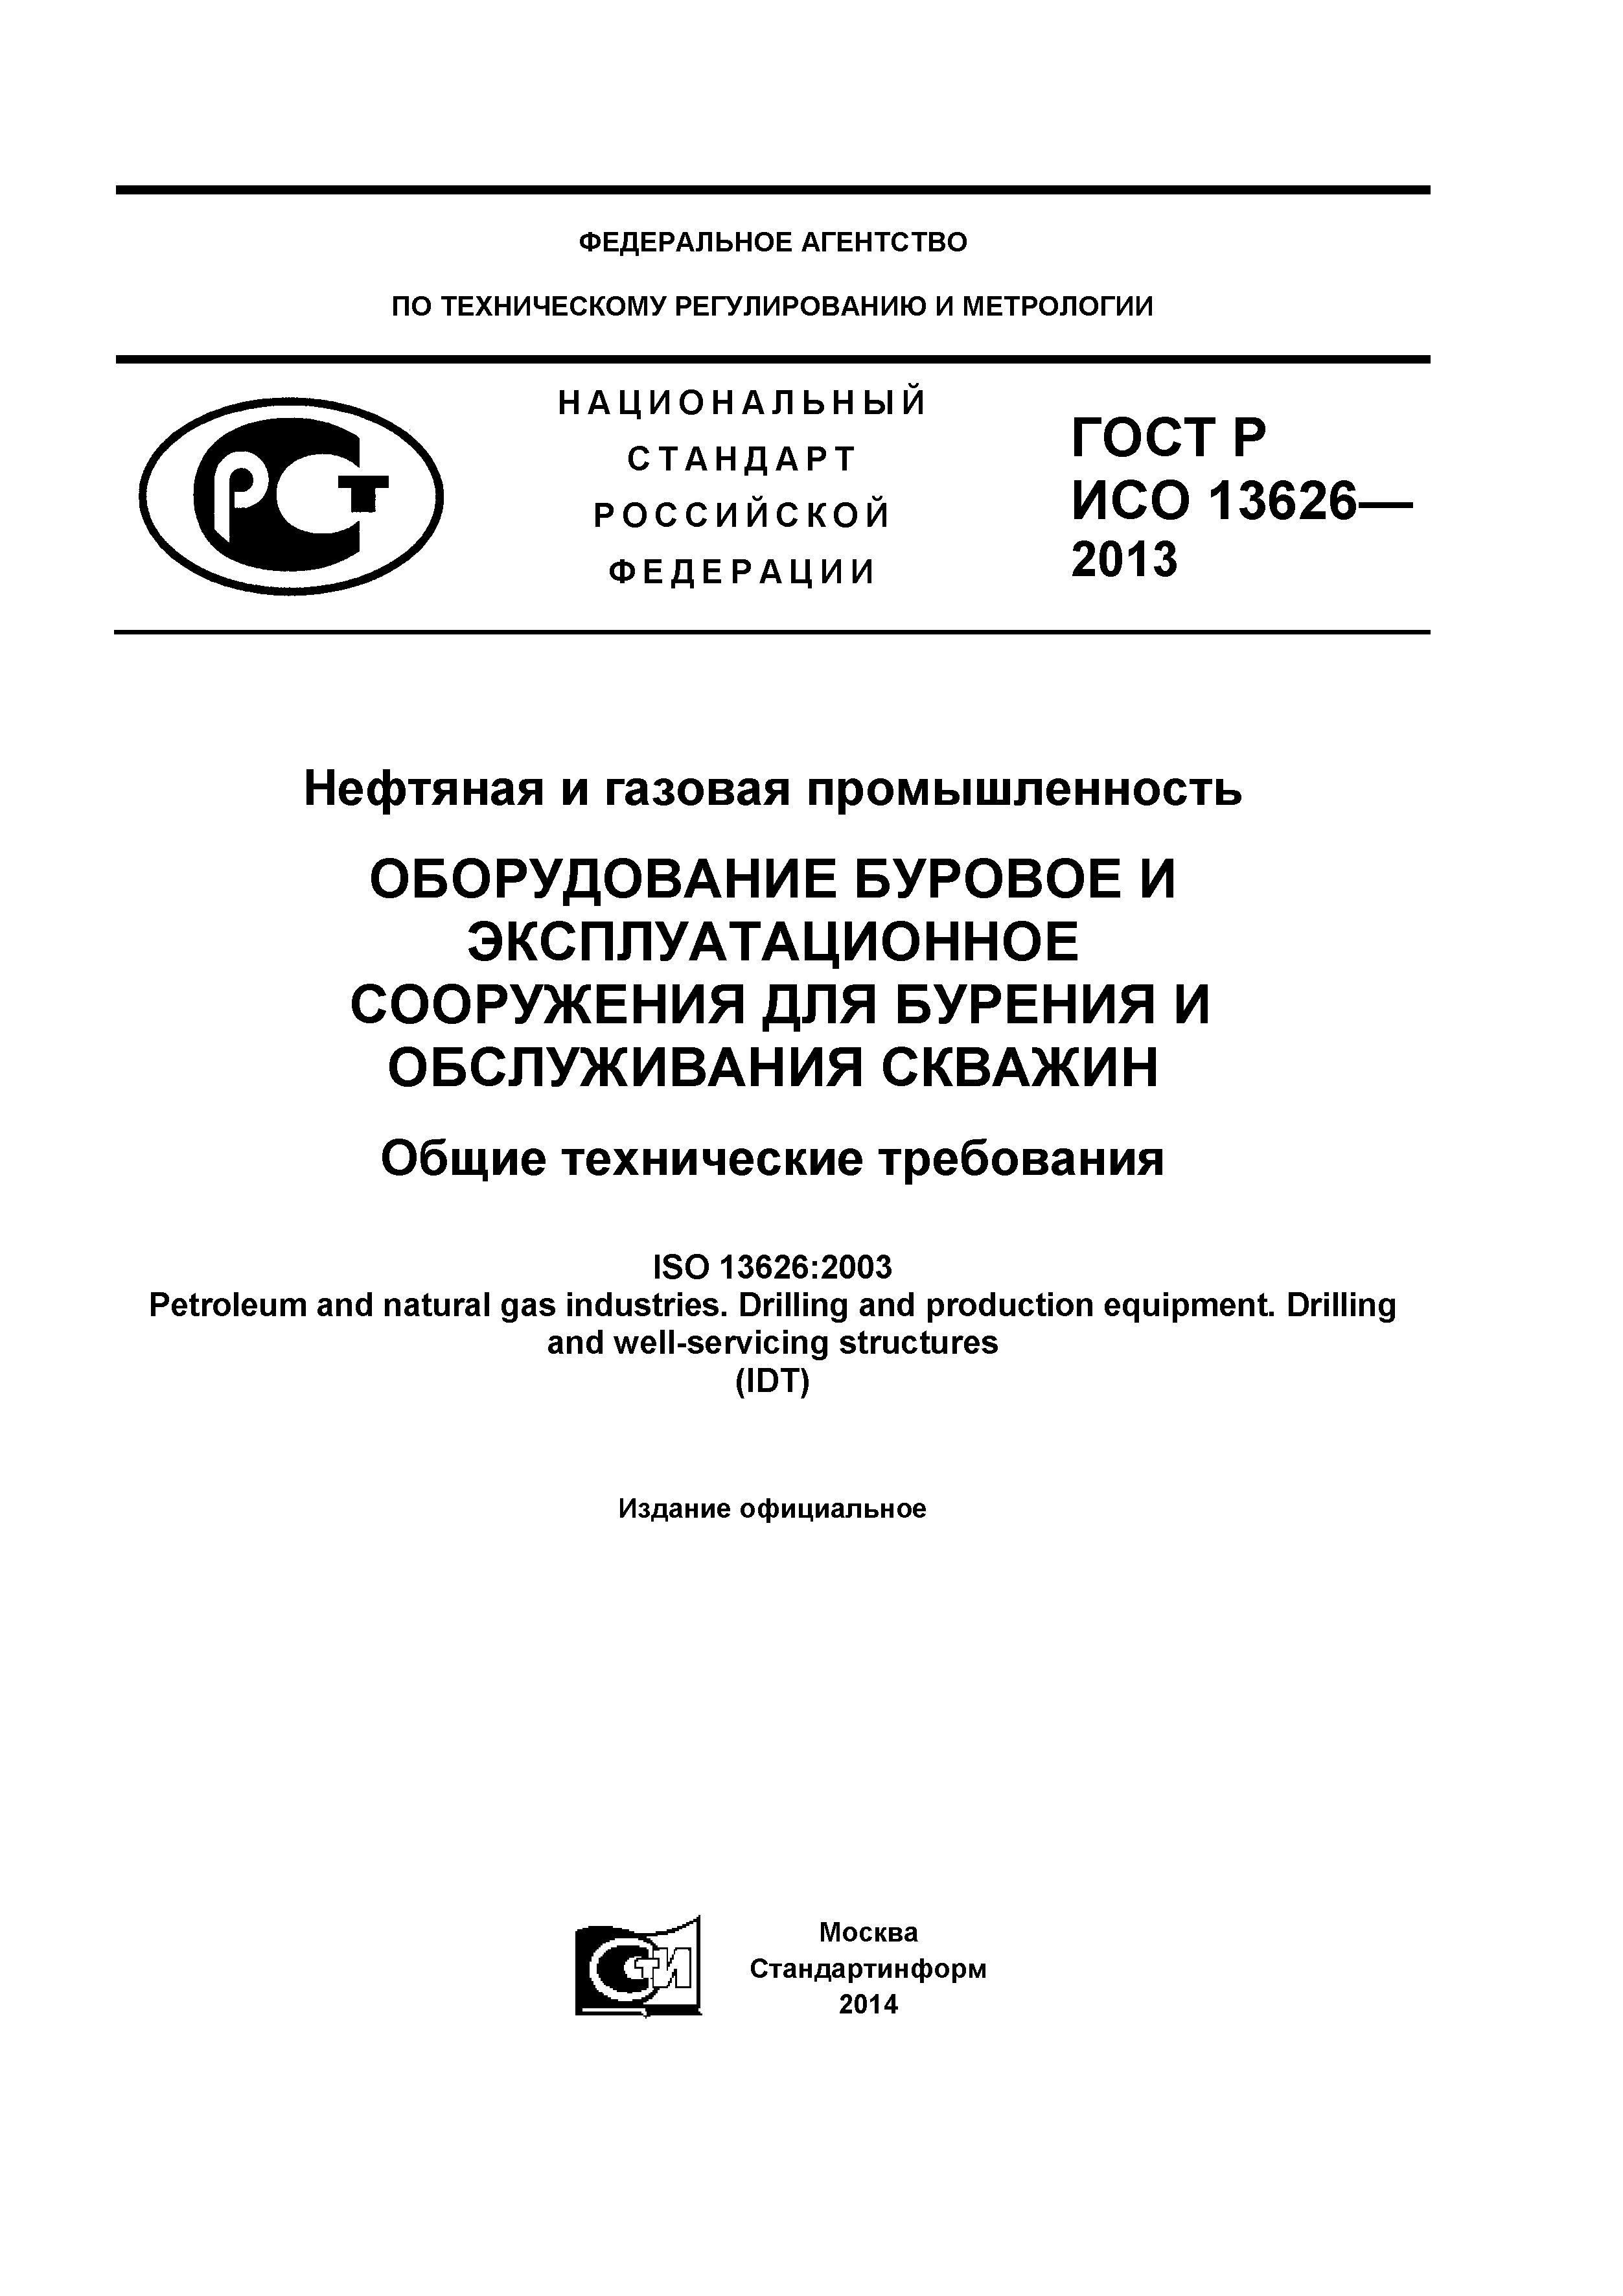 ГОСТ Р ИСО 13626-2013